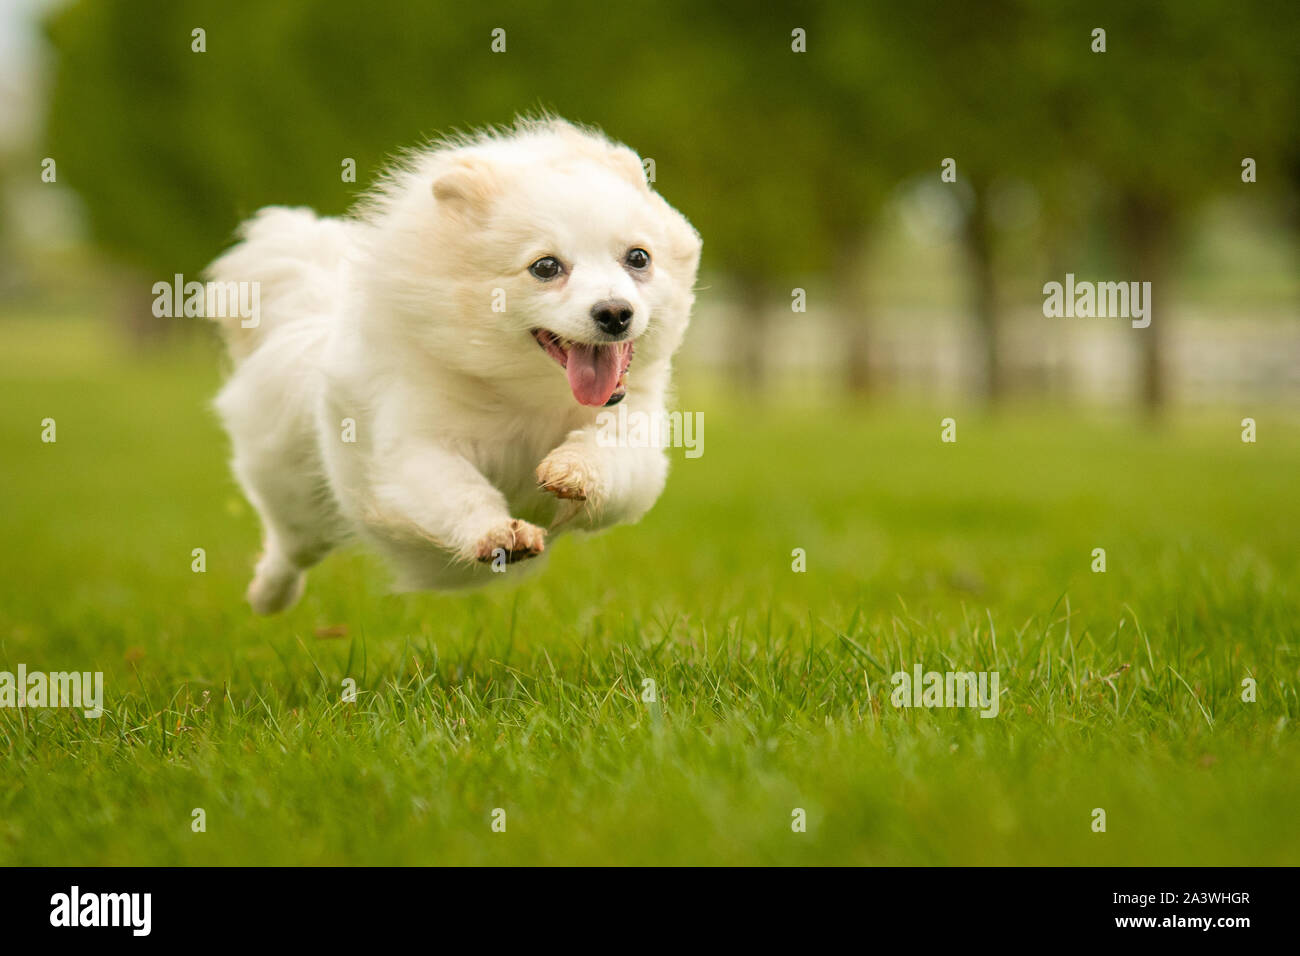 Cute White German Spitz Klein Dog in Grass Park Stock Photo